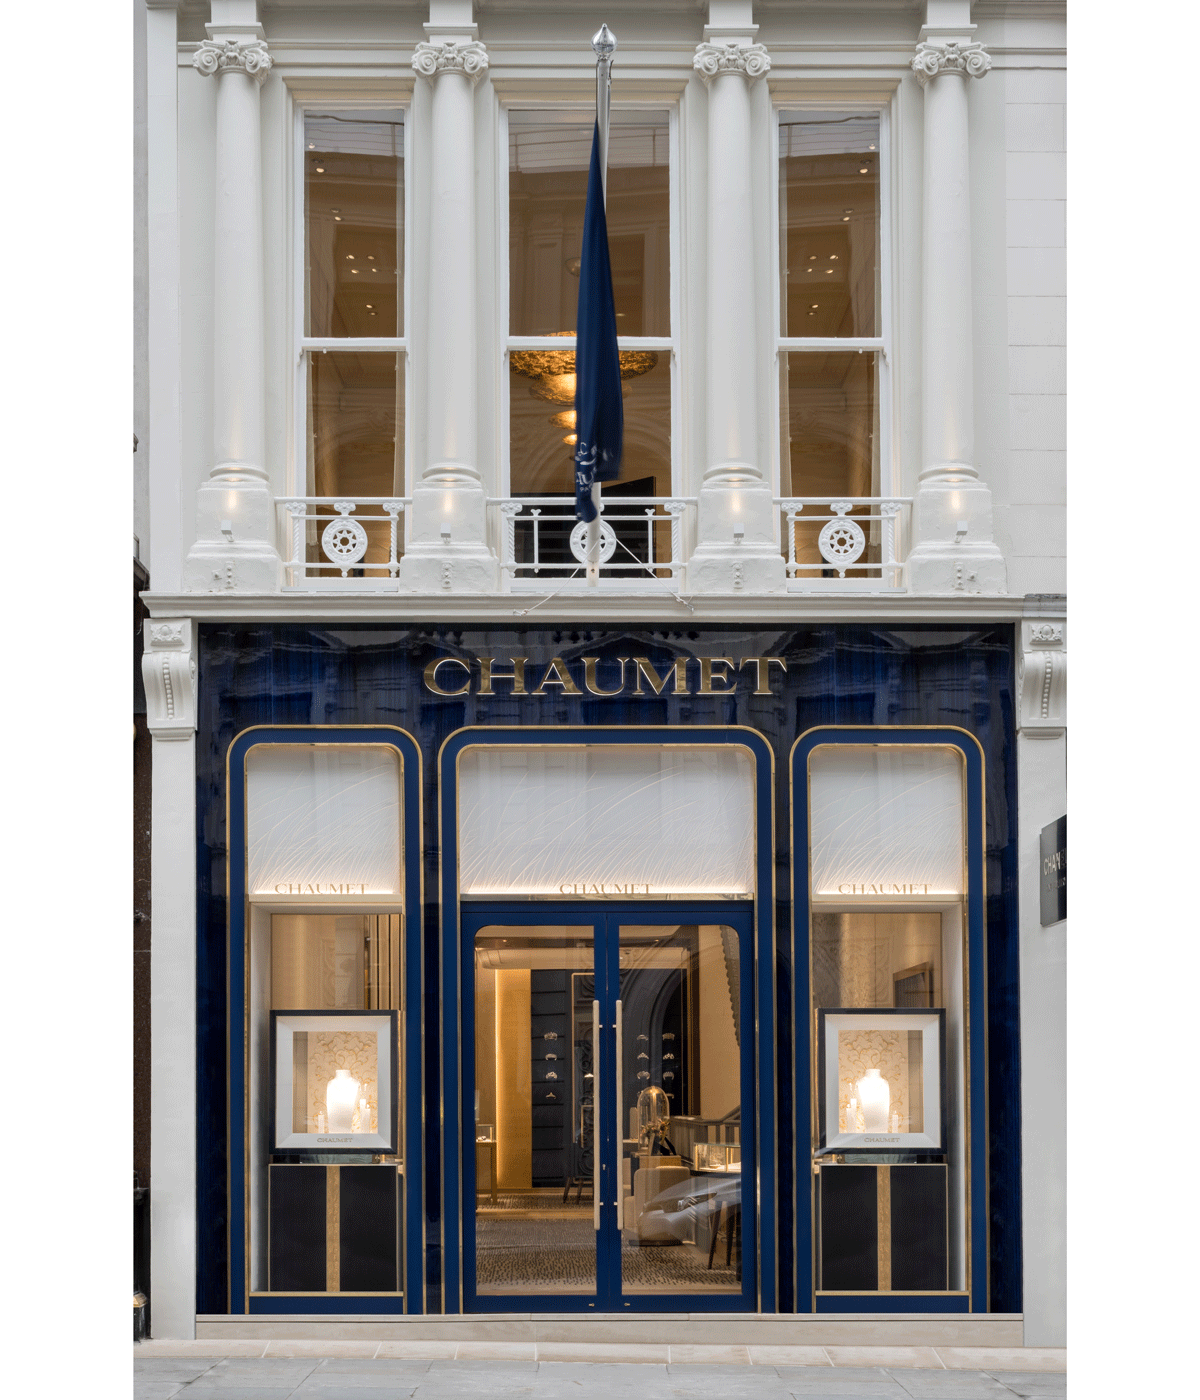 London’s Chaumet boutique nods to Parisian design codes